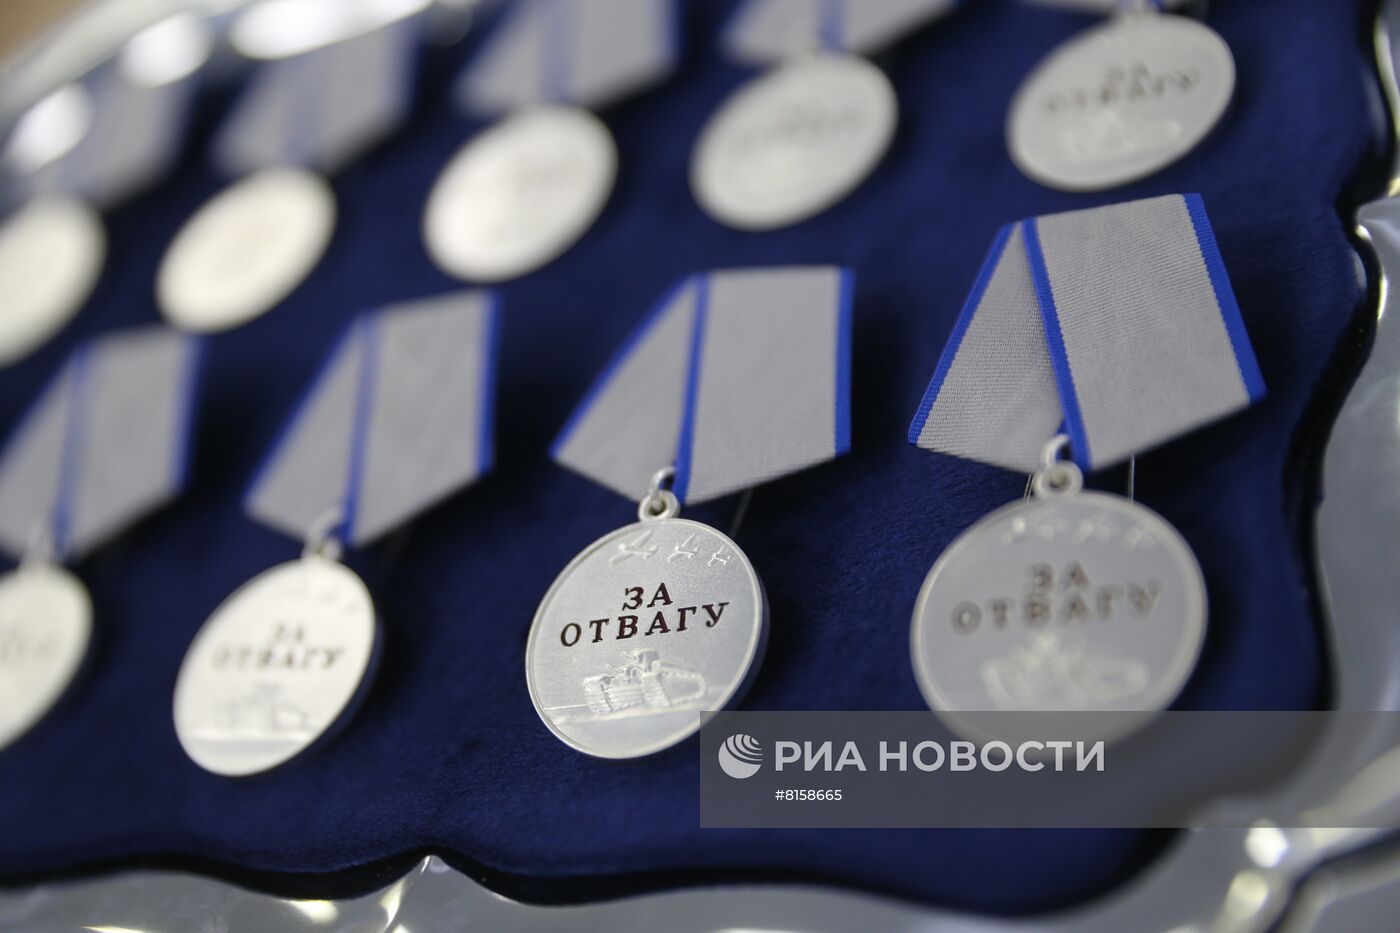 В. Матвиенко вручила медали участникам специальной военной операции по защите Донбасса